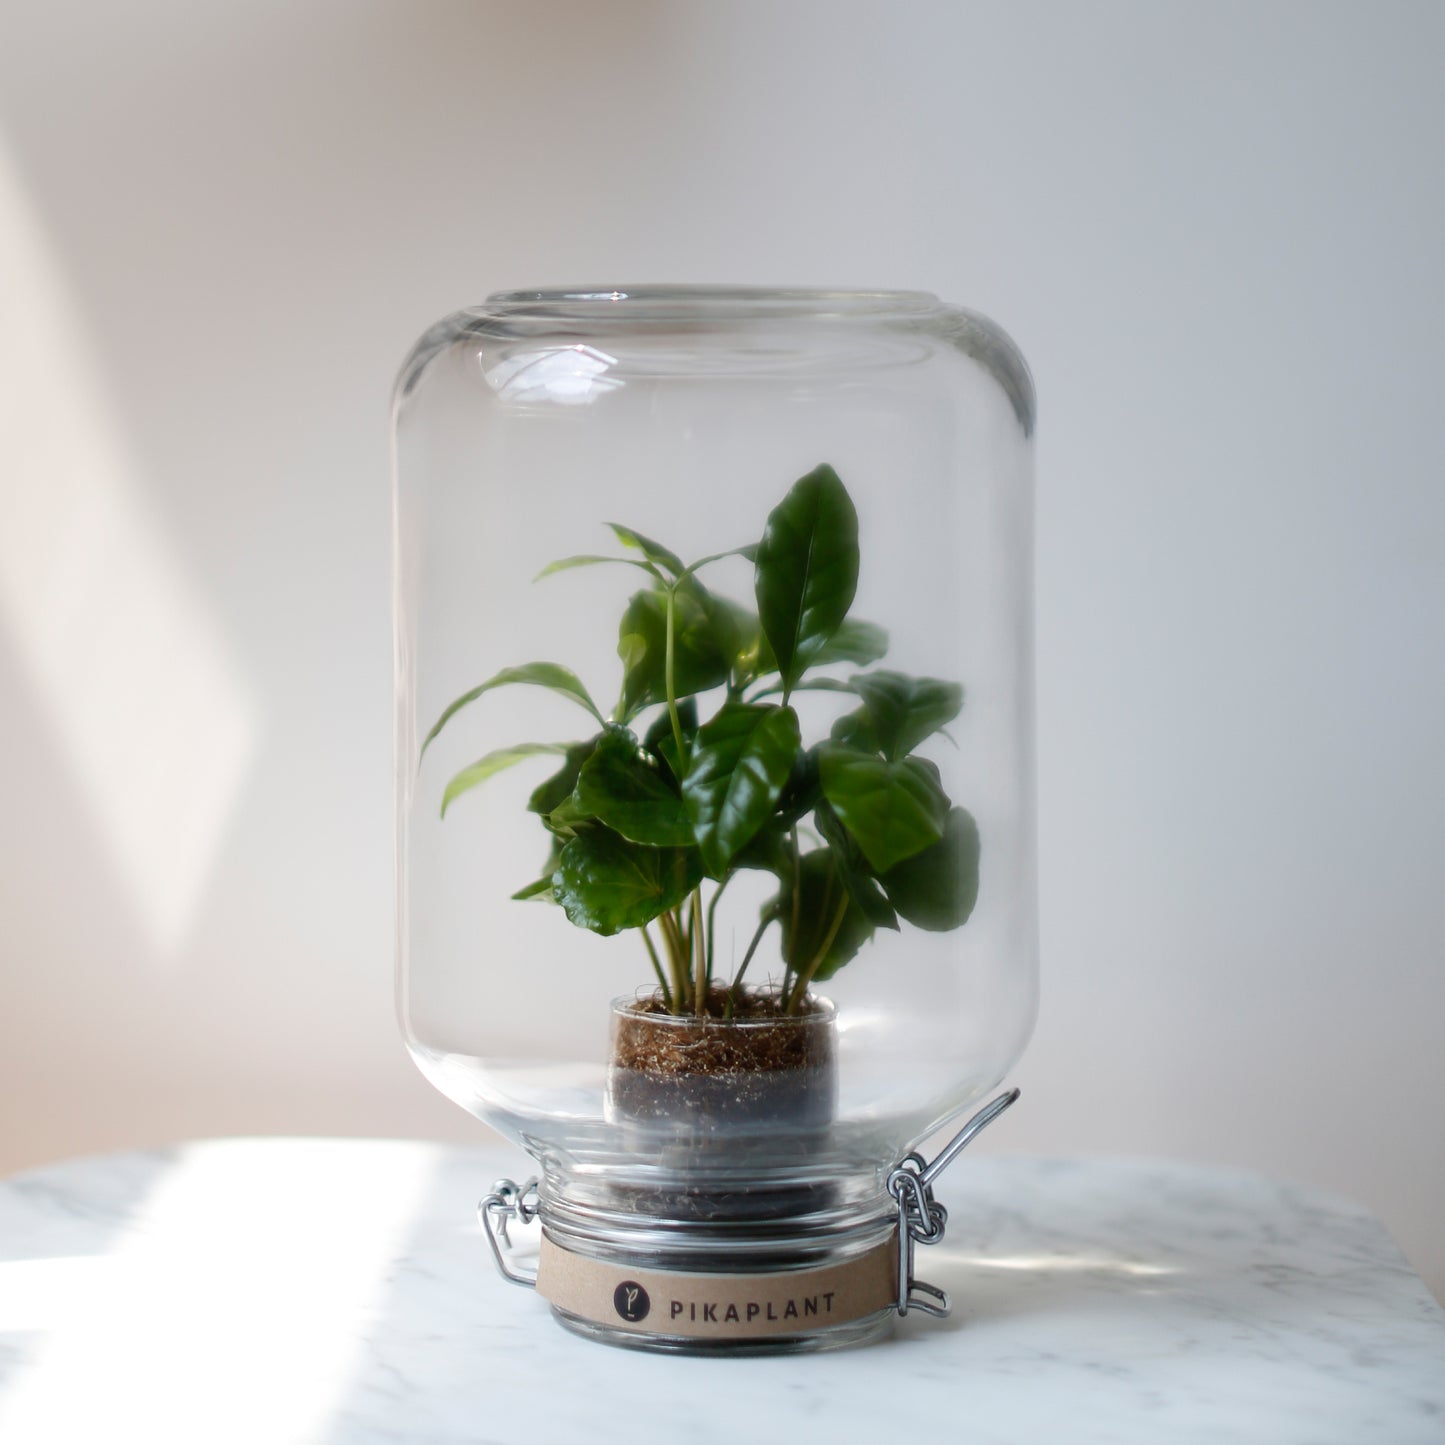 Pikaplant Jar Coffea Design Terrarium